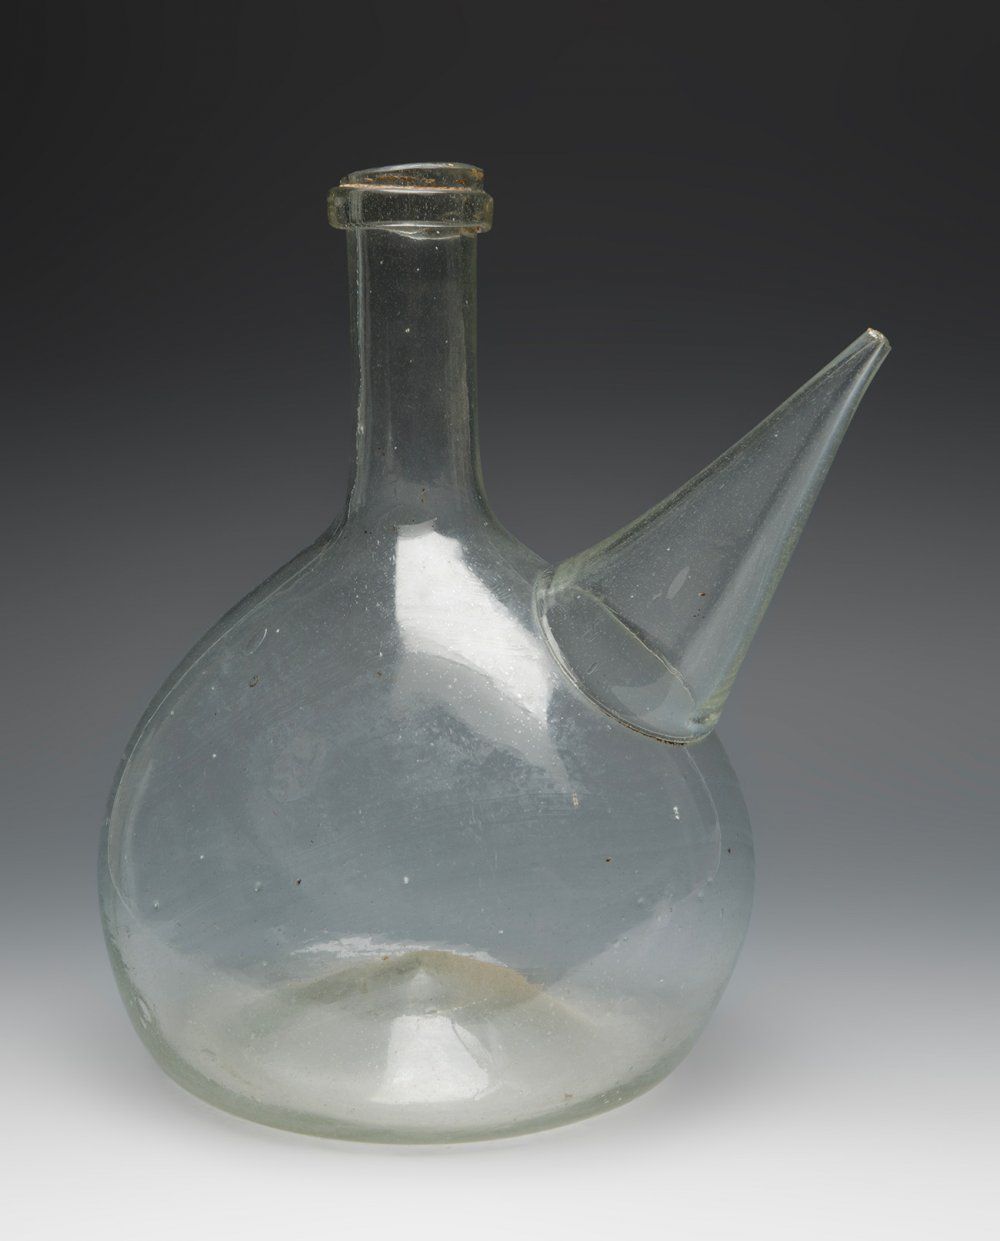 Null Katalanischer Porrón aus dem 18. Jahrhundert.
Geblasenes Glas.
Es hat Haare&hellip;